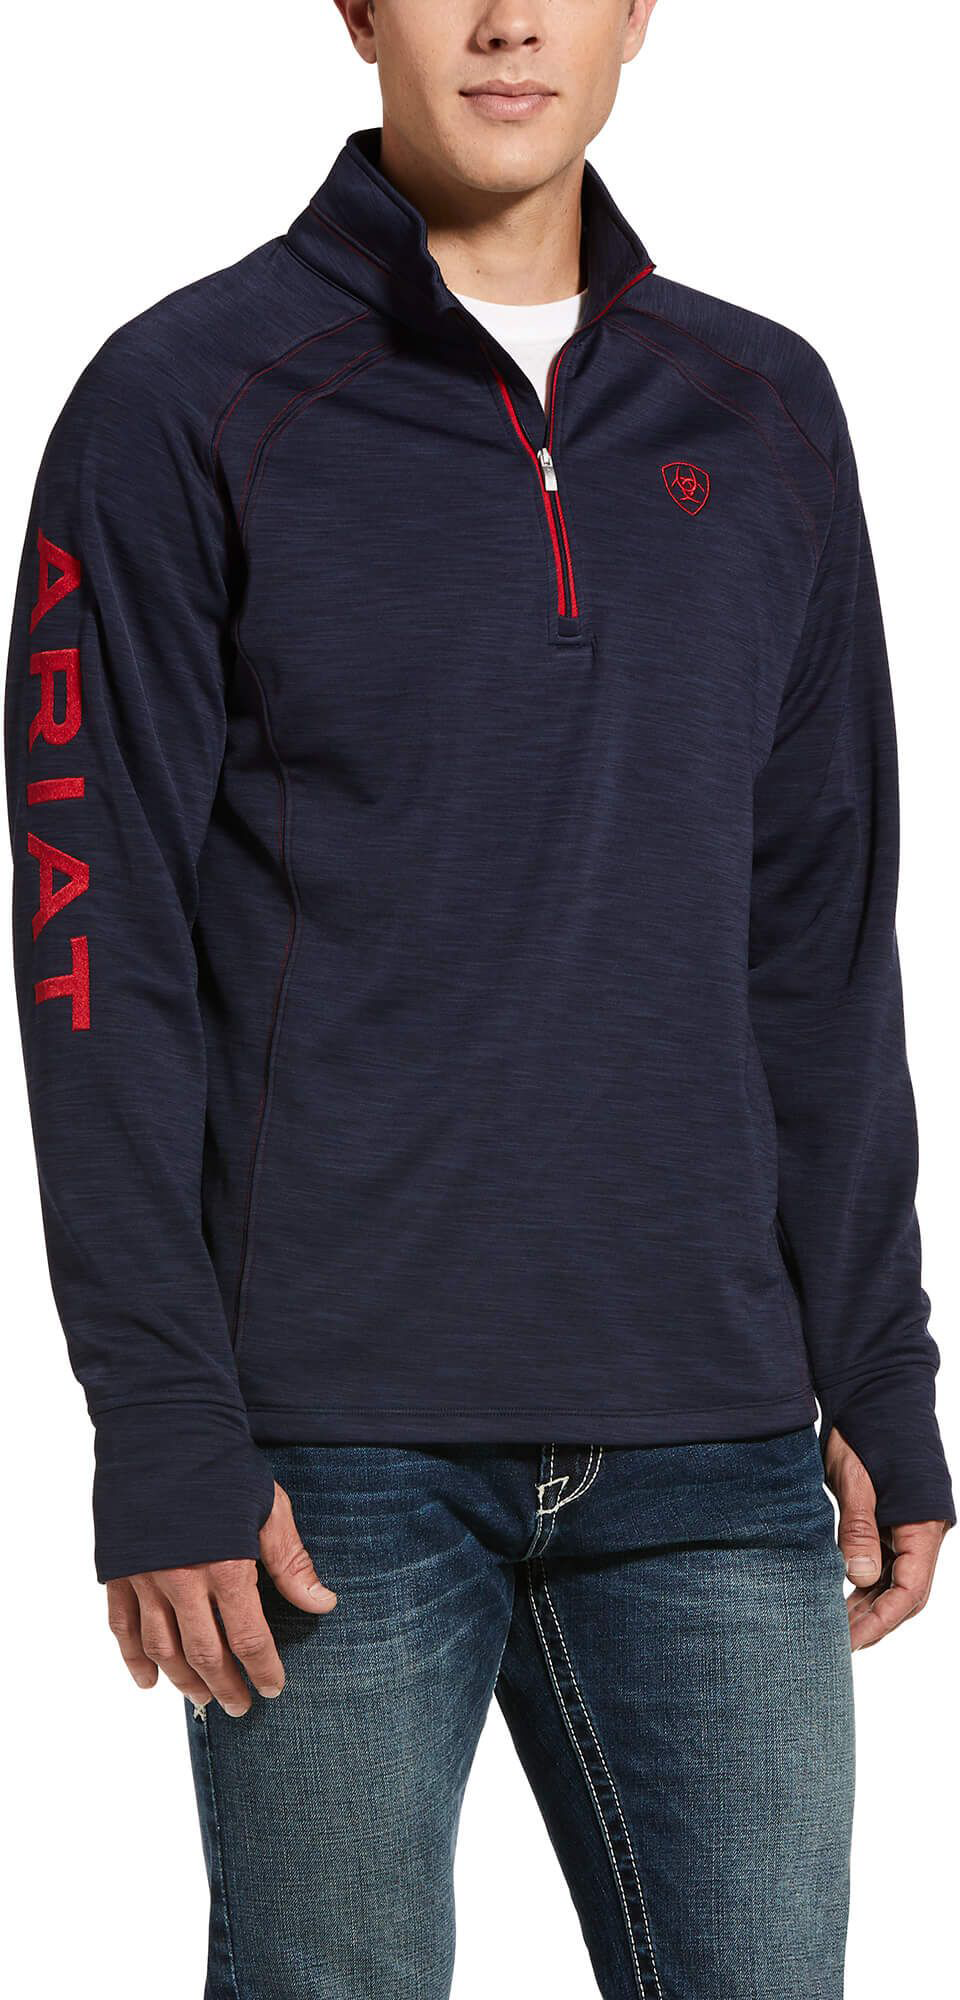 Ariat Tek Team Half-Zip Long-Sleeve Sweatshirt for Men